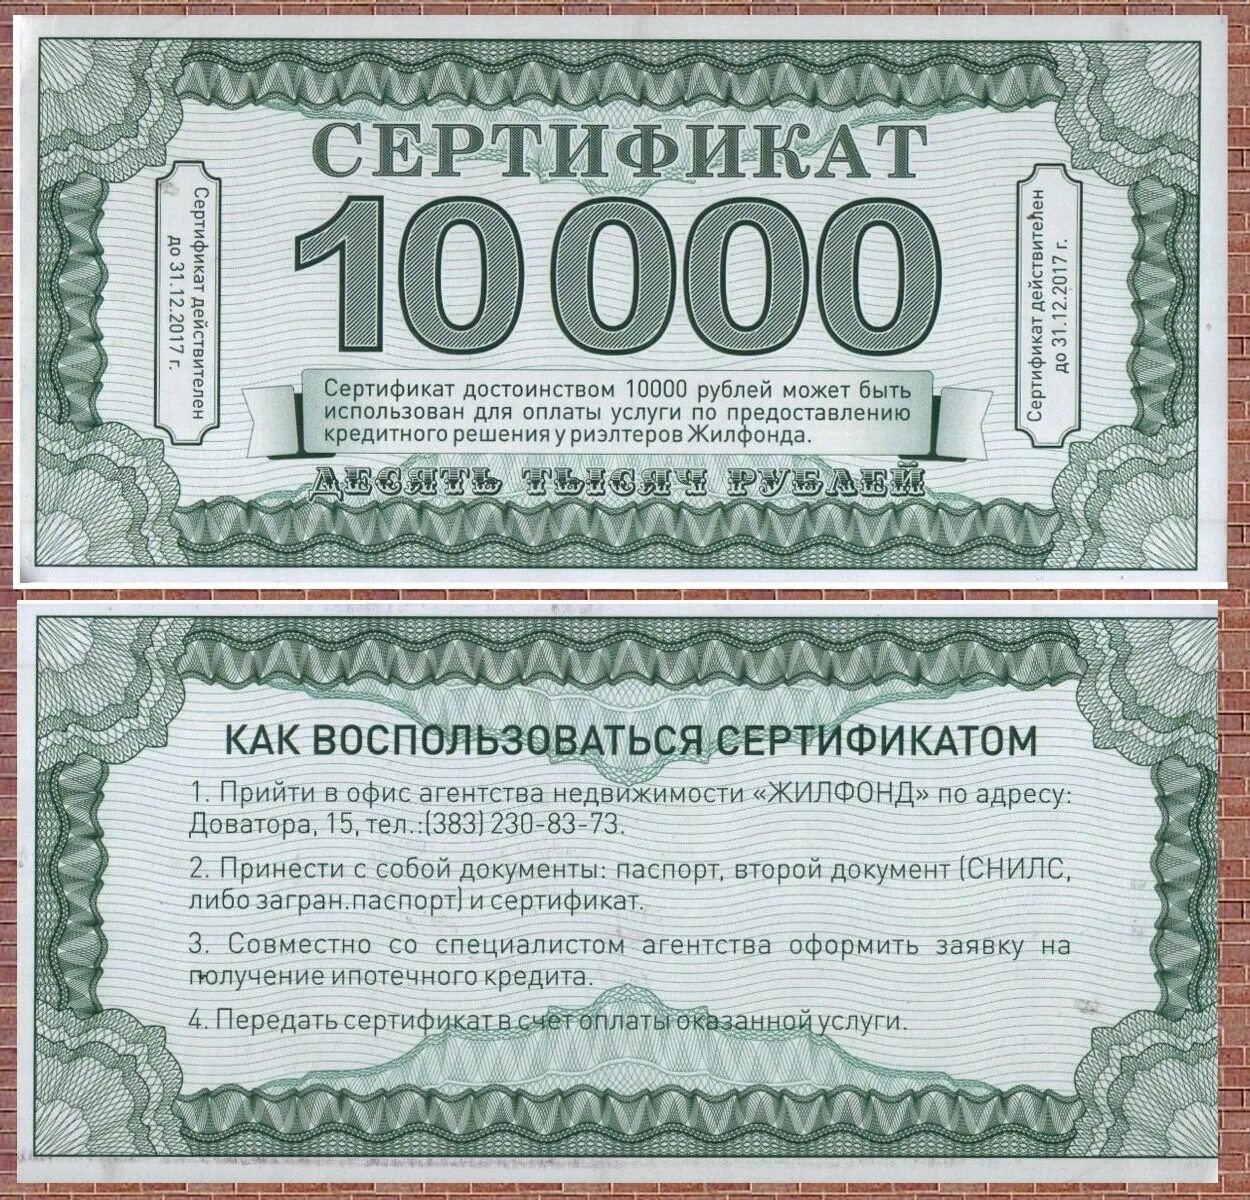 Сертификат на 10 тысяч. Денежный сертификат на 10000. Подарочный сертификат на 10000 рублей. Сертификат на 10000 рублей. Код 1000 рублей